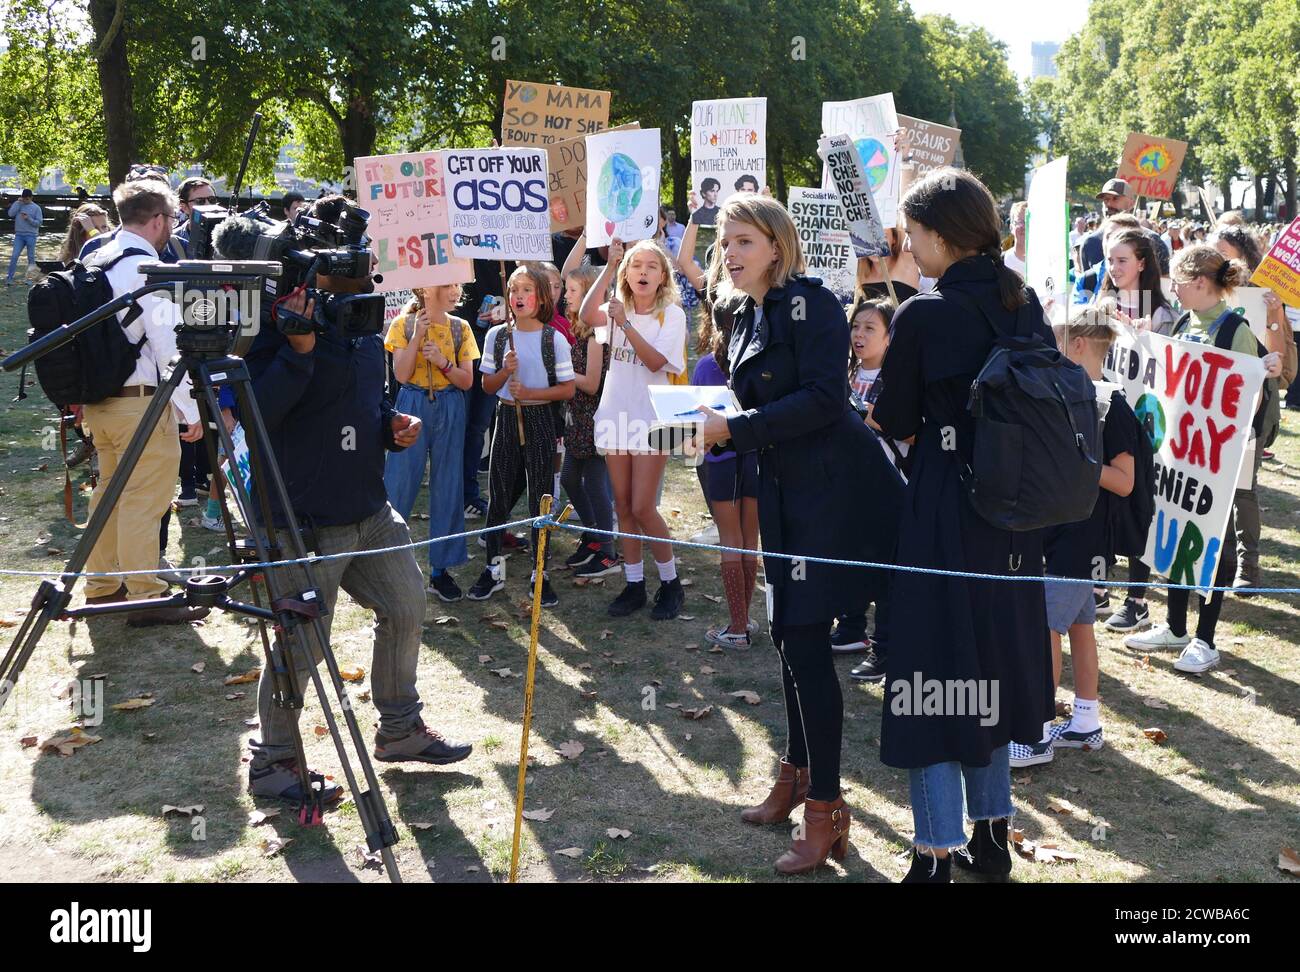 Demonstranten bei einer Kundgebung im Victoria Park, in der Nähe des Parlaments, London, während des Klimastreiks vom 20. September 2019. Auch bekannt als die Globale Woche der Zukunft, eine Reihe von internationalen Streiks und Protesten, um Maßnahmen gegen den Klimawandel zu fordern. Die Proteste vom 20. September waren wahrscheinlich die größten Klimaangriffe der Weltgeschichte. Die Organisatoren berichteten, dass weltweit über 4 Millionen Menschen an Streiks teilgenommen haben, darunter 300000 Menschen, die sich britischen Protesten angeschlossen haben. Greta Thunberg, (* 3. Januar 2003), schwedische Umweltaktivistin, hat sich der weltweiten Sensibilisierung für die Risiken von Clim zugeschrieben Stockfoto